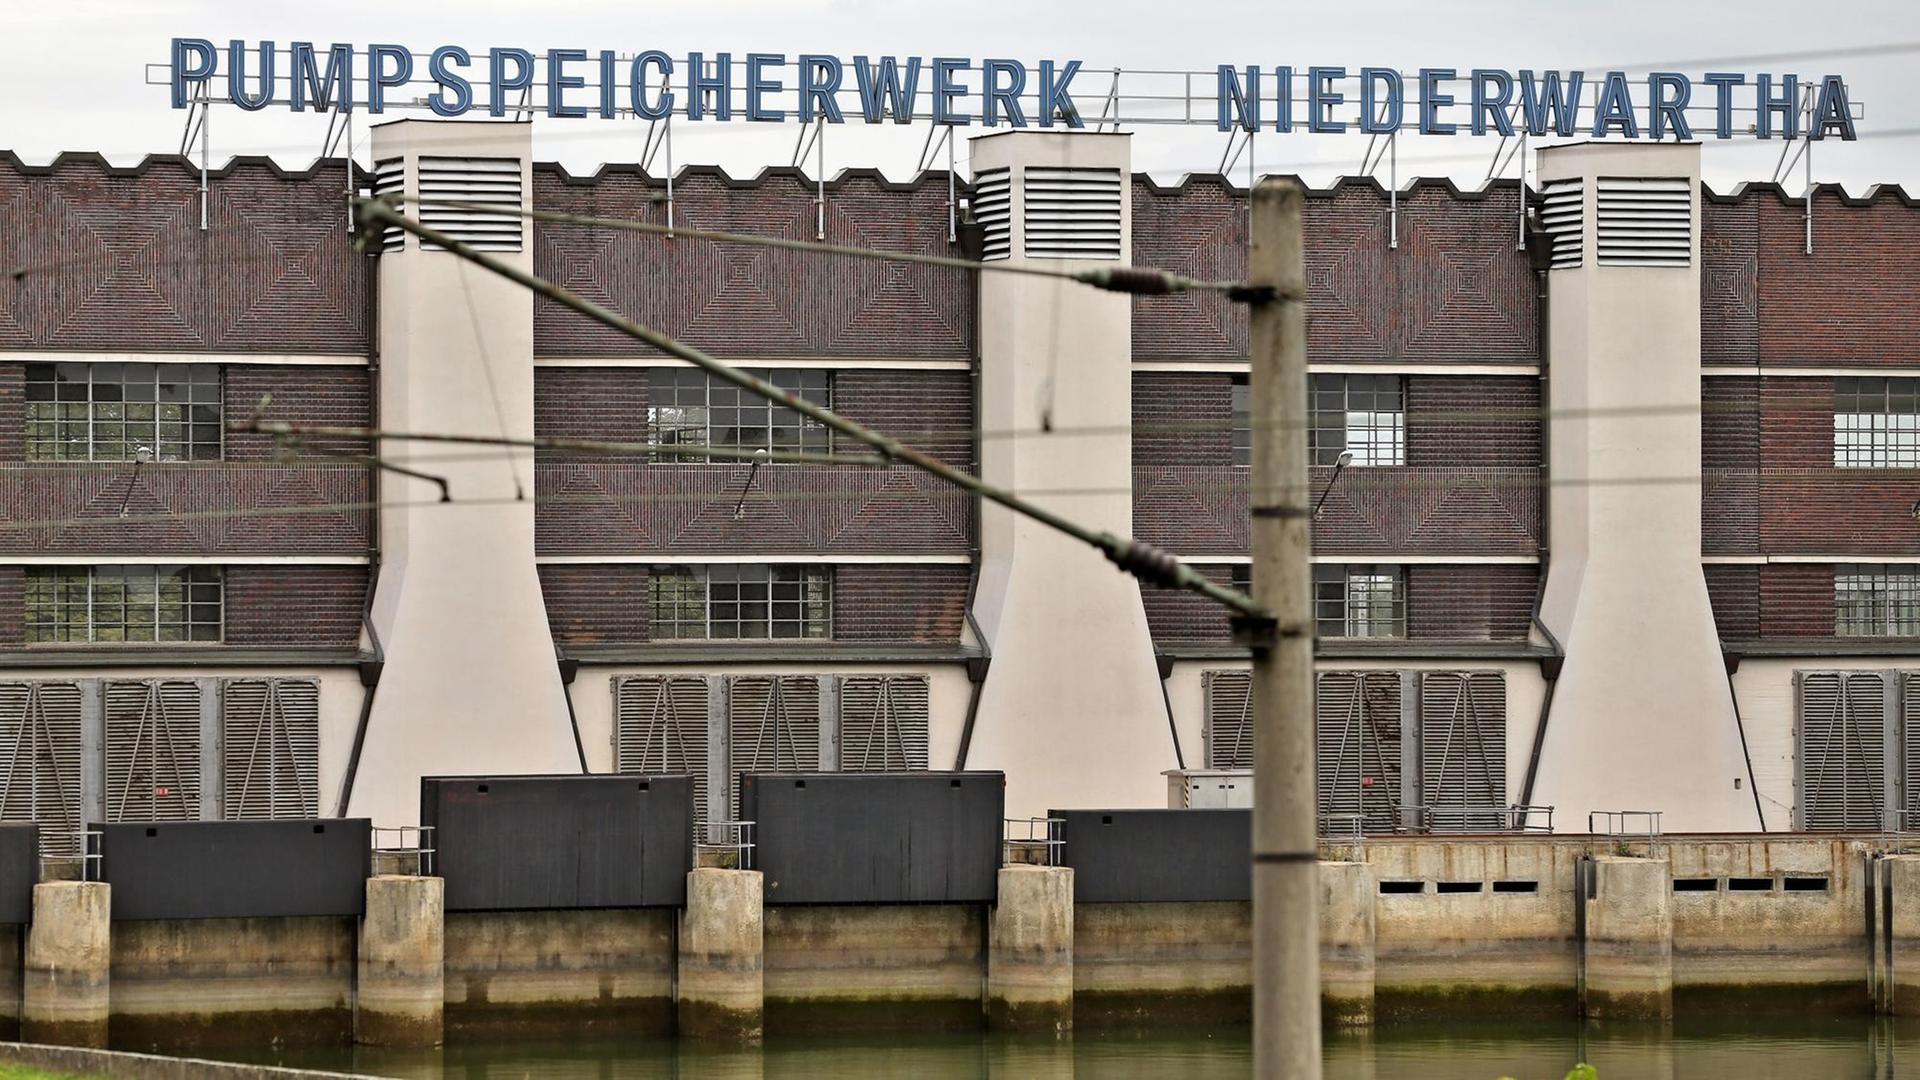 Industriebauten aus rotem Klinker, unterbrochen von weißen Kaminen. Darüber der blaue Schriftzug "Pumpspeicherwerk Niederwartha".